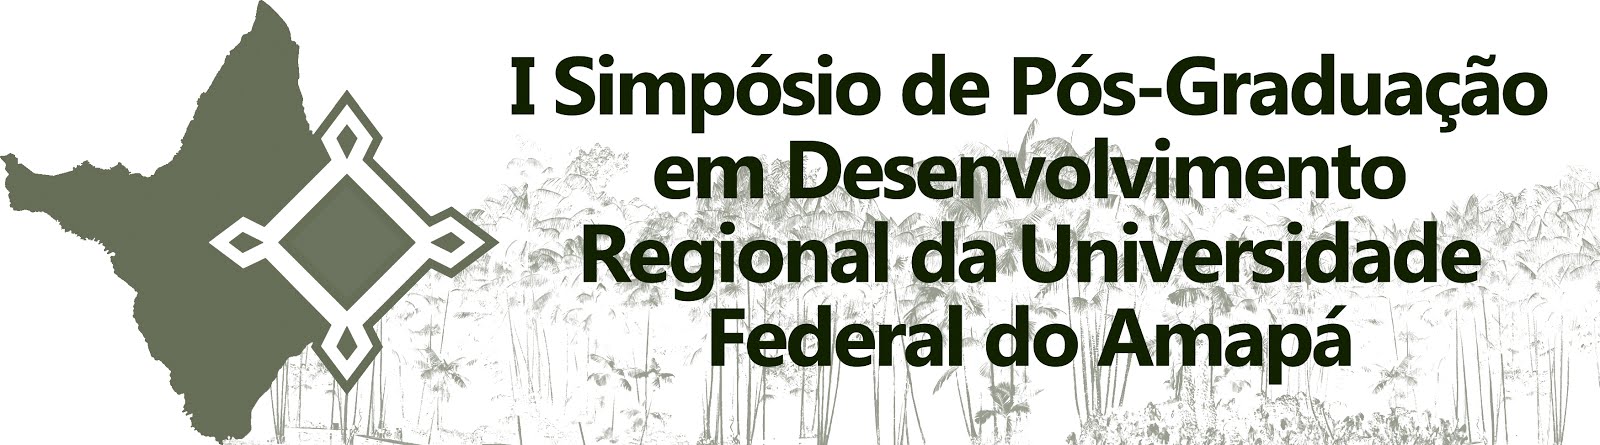 I Simpósio de Pós-Graduação em Desenvolvimento Regional da Universidade Federal do Amapá